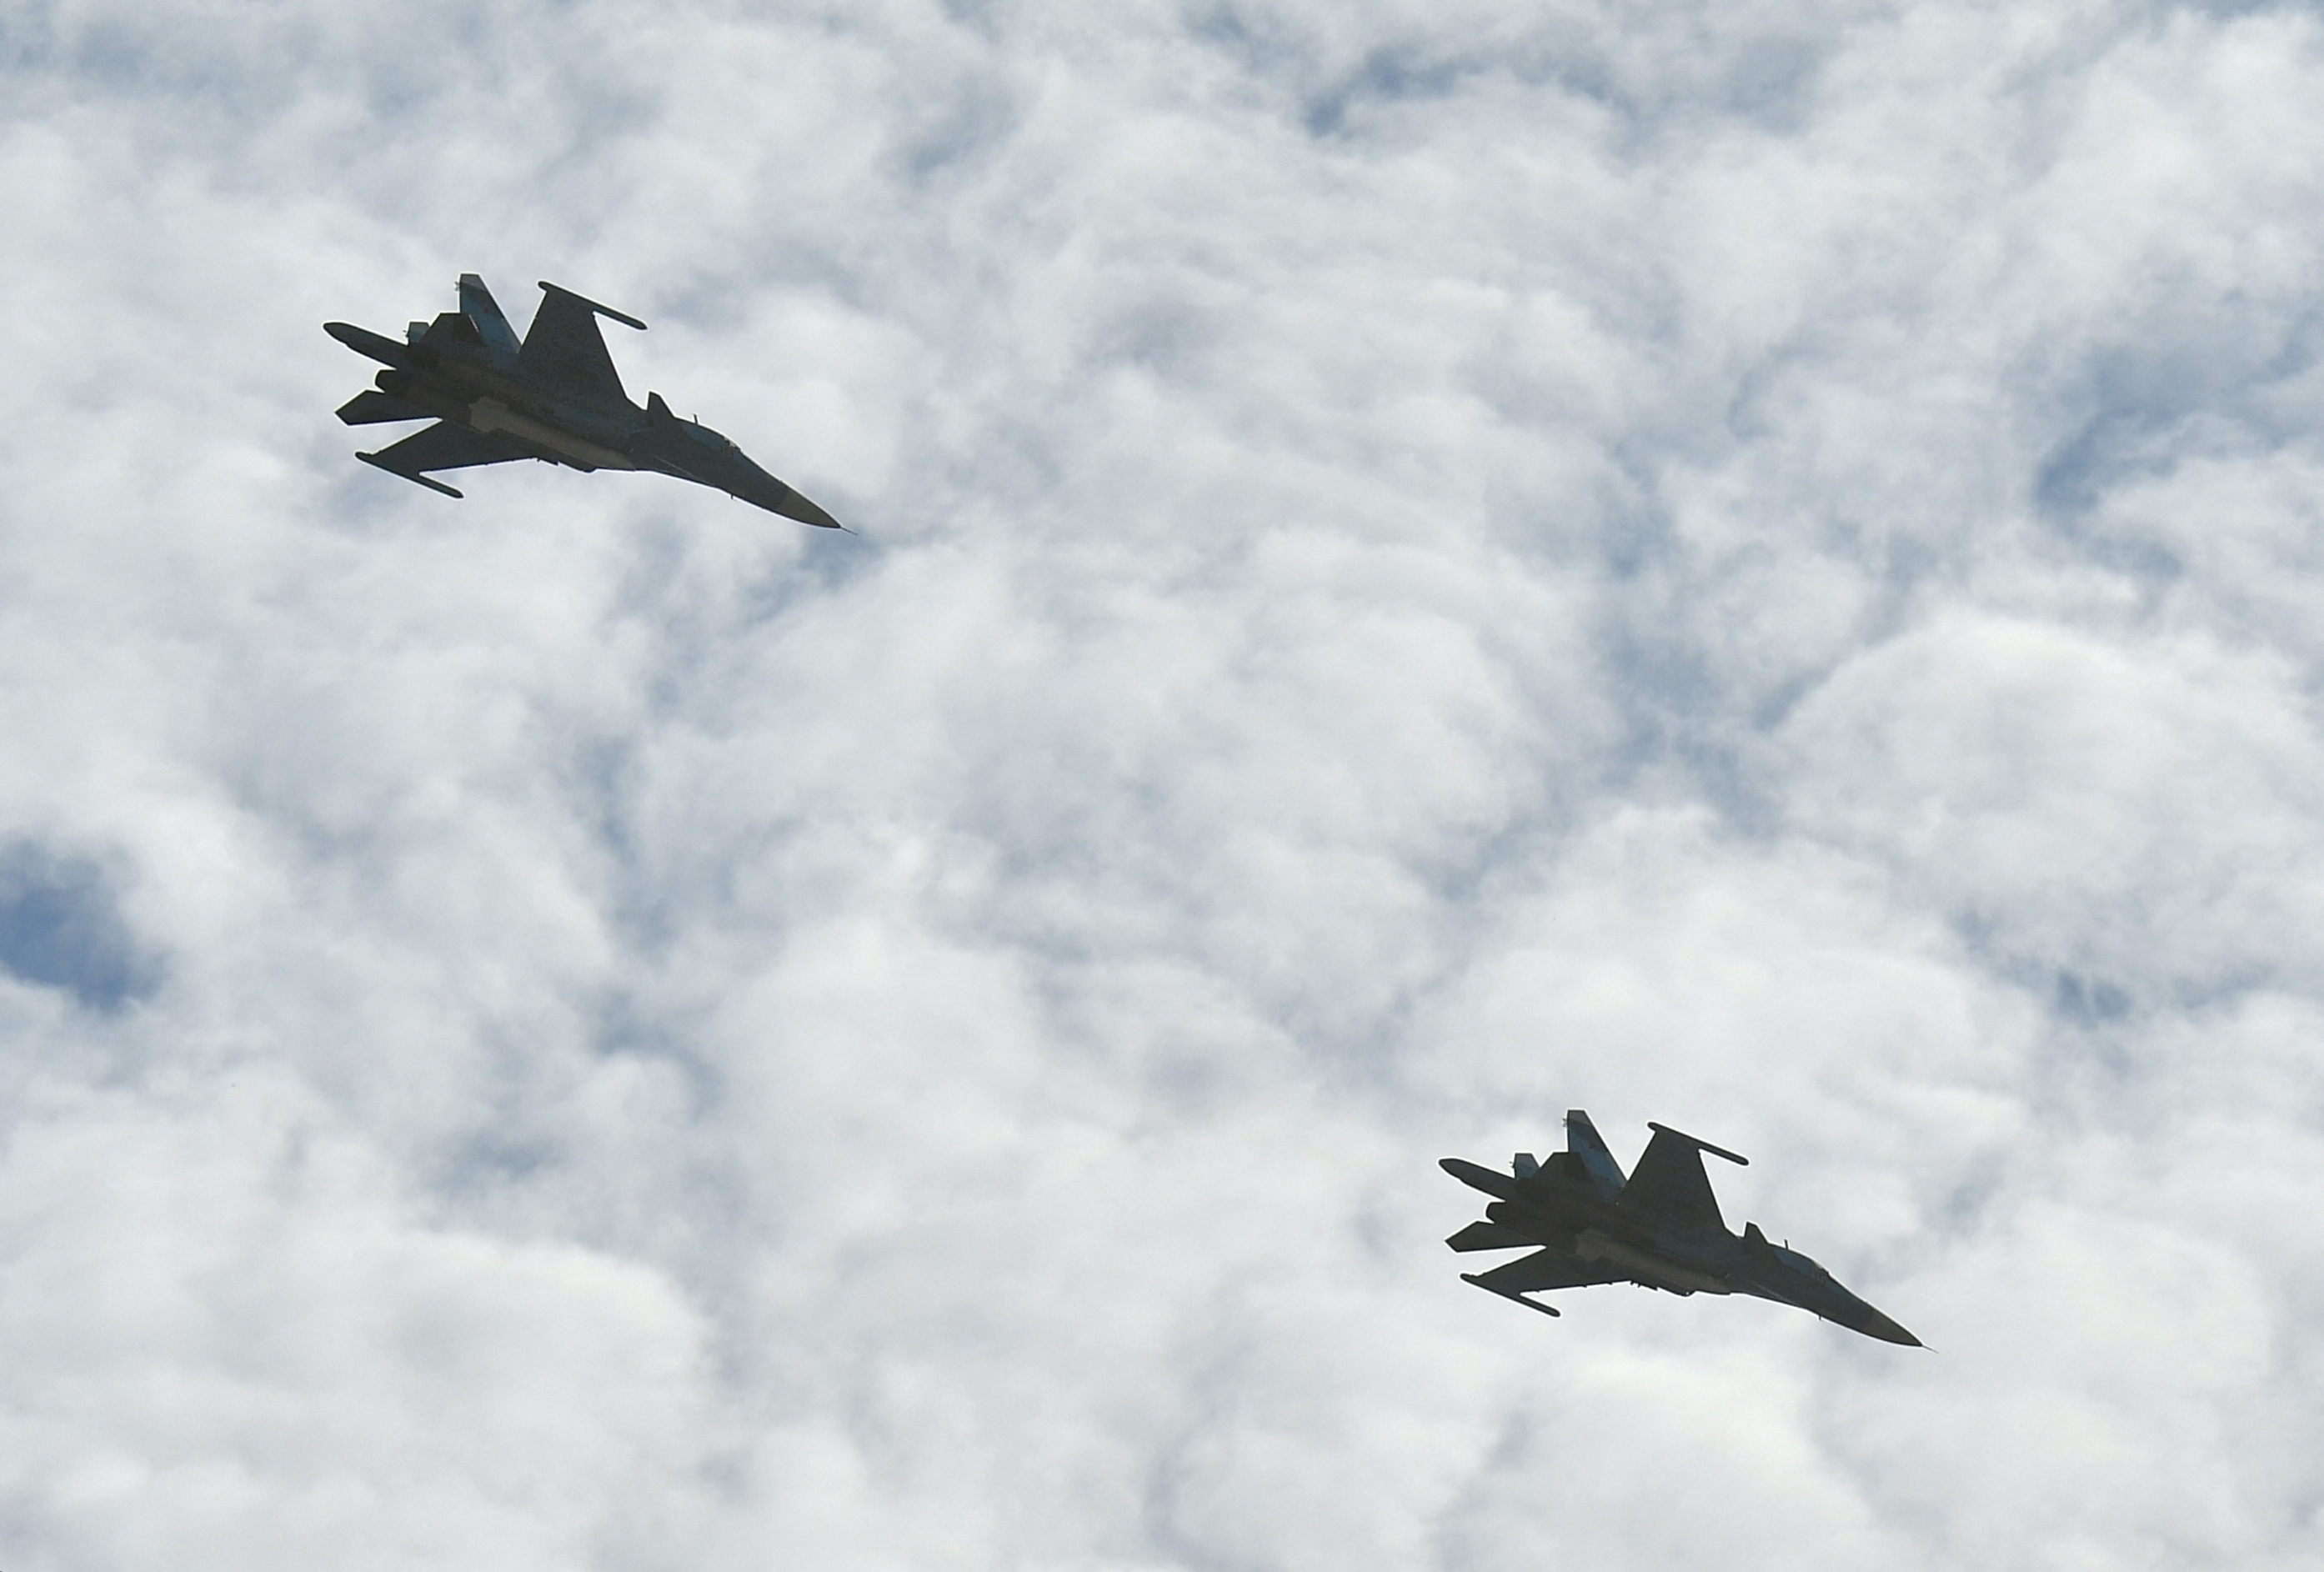 Két orosz vadászgép kísérte az amerikai légierő négy repülőgépét a Fekete-tenger felett